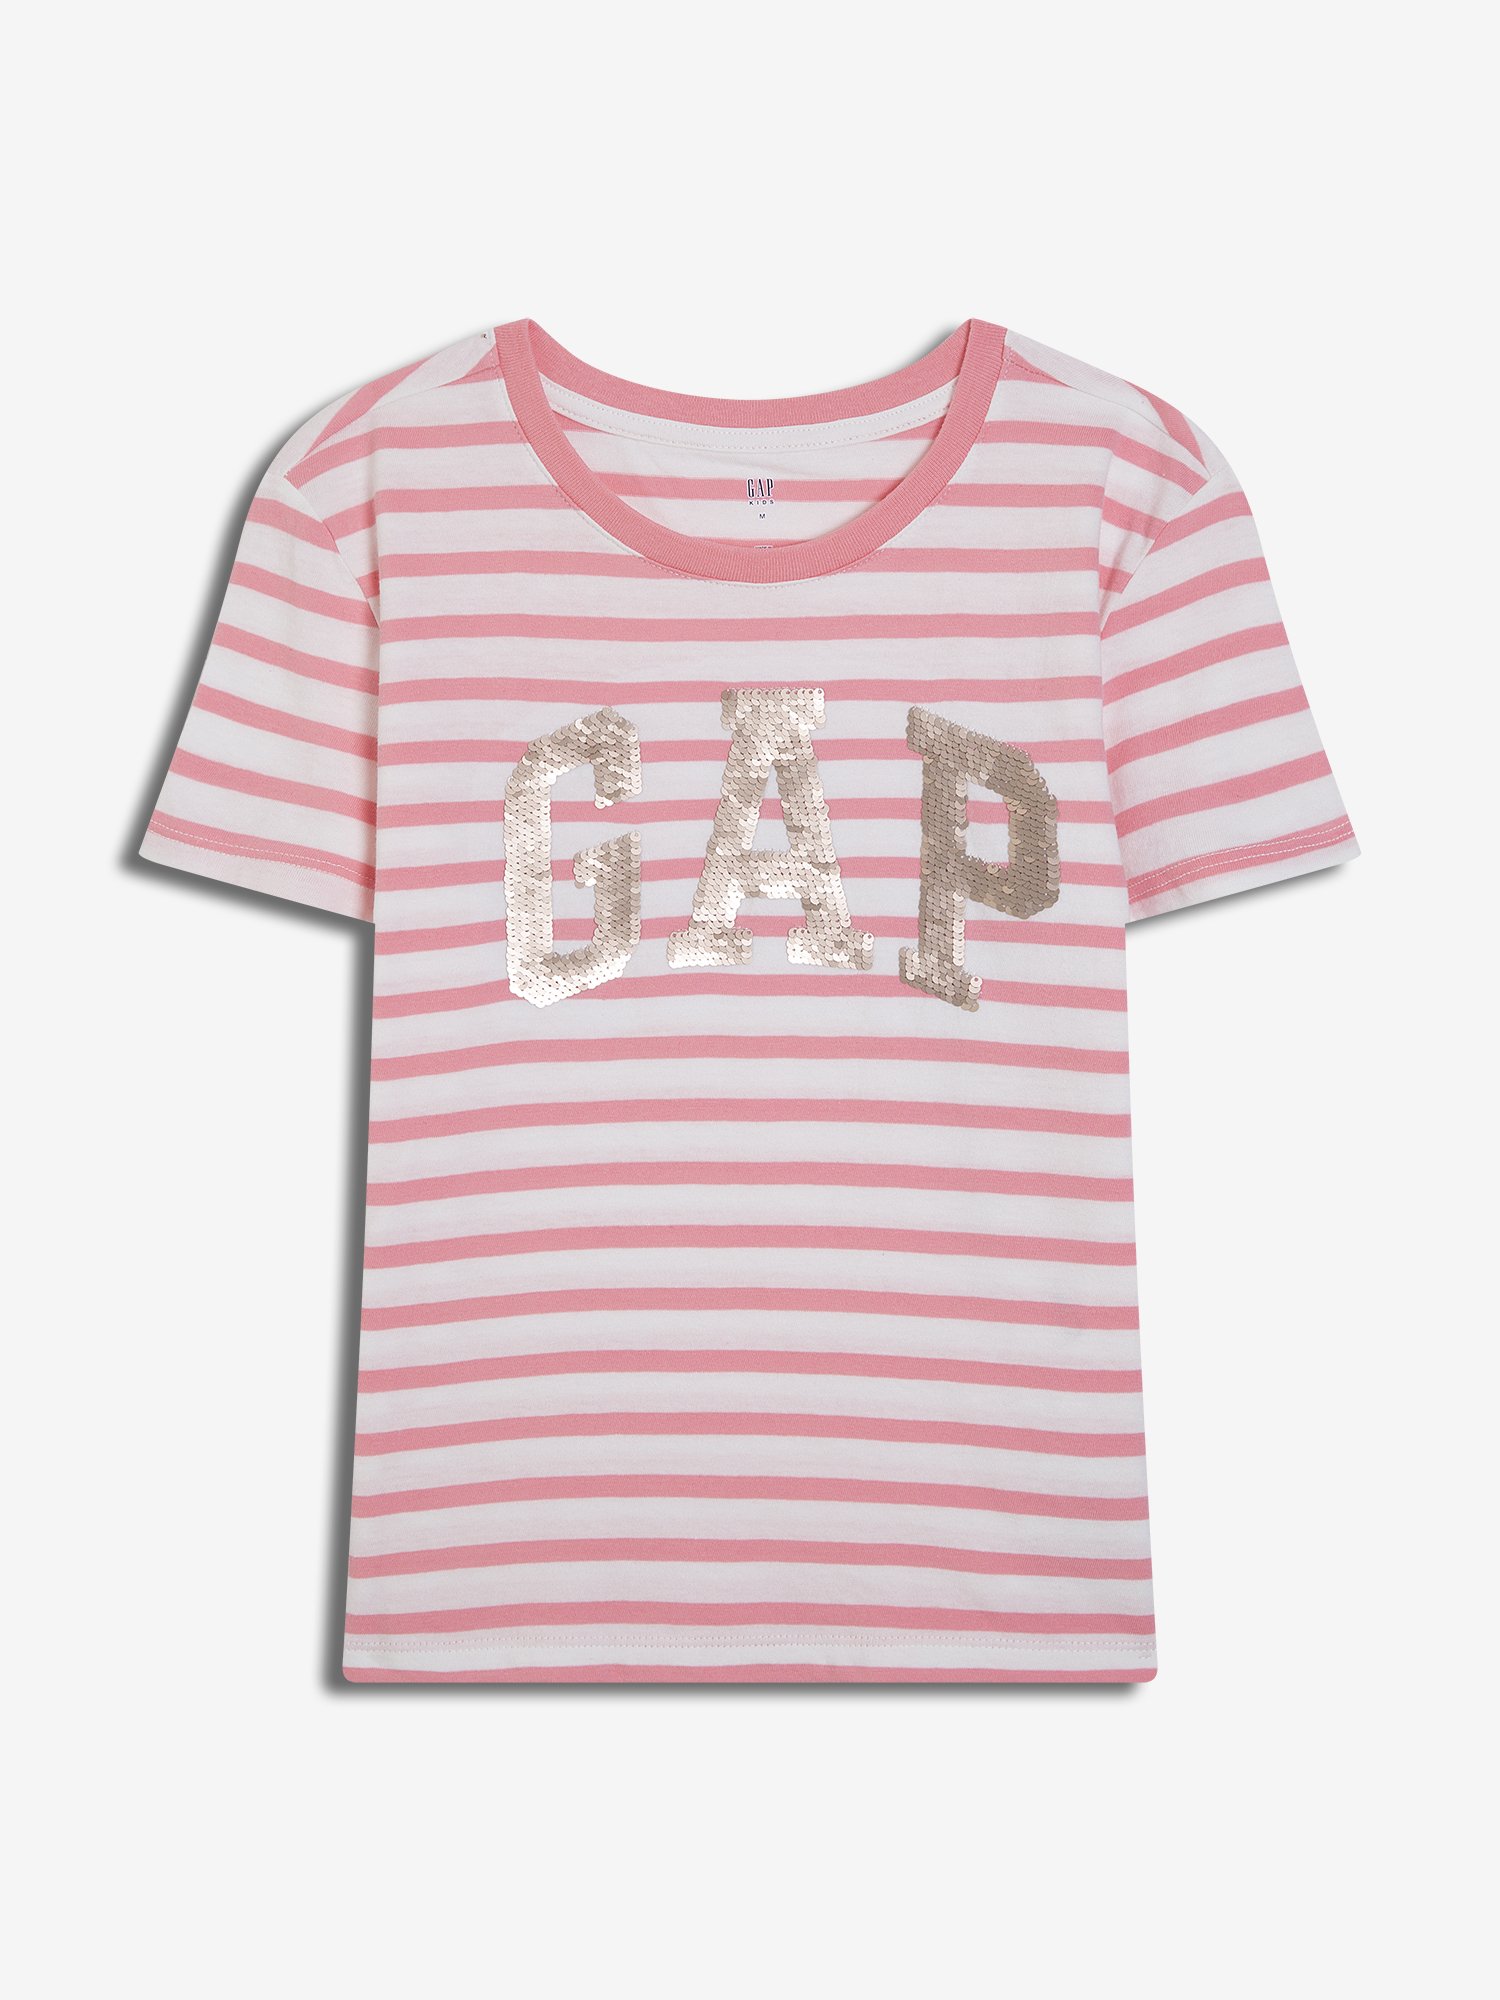 Kız Çocuk Pullu Gap Logo T-Shirt product image